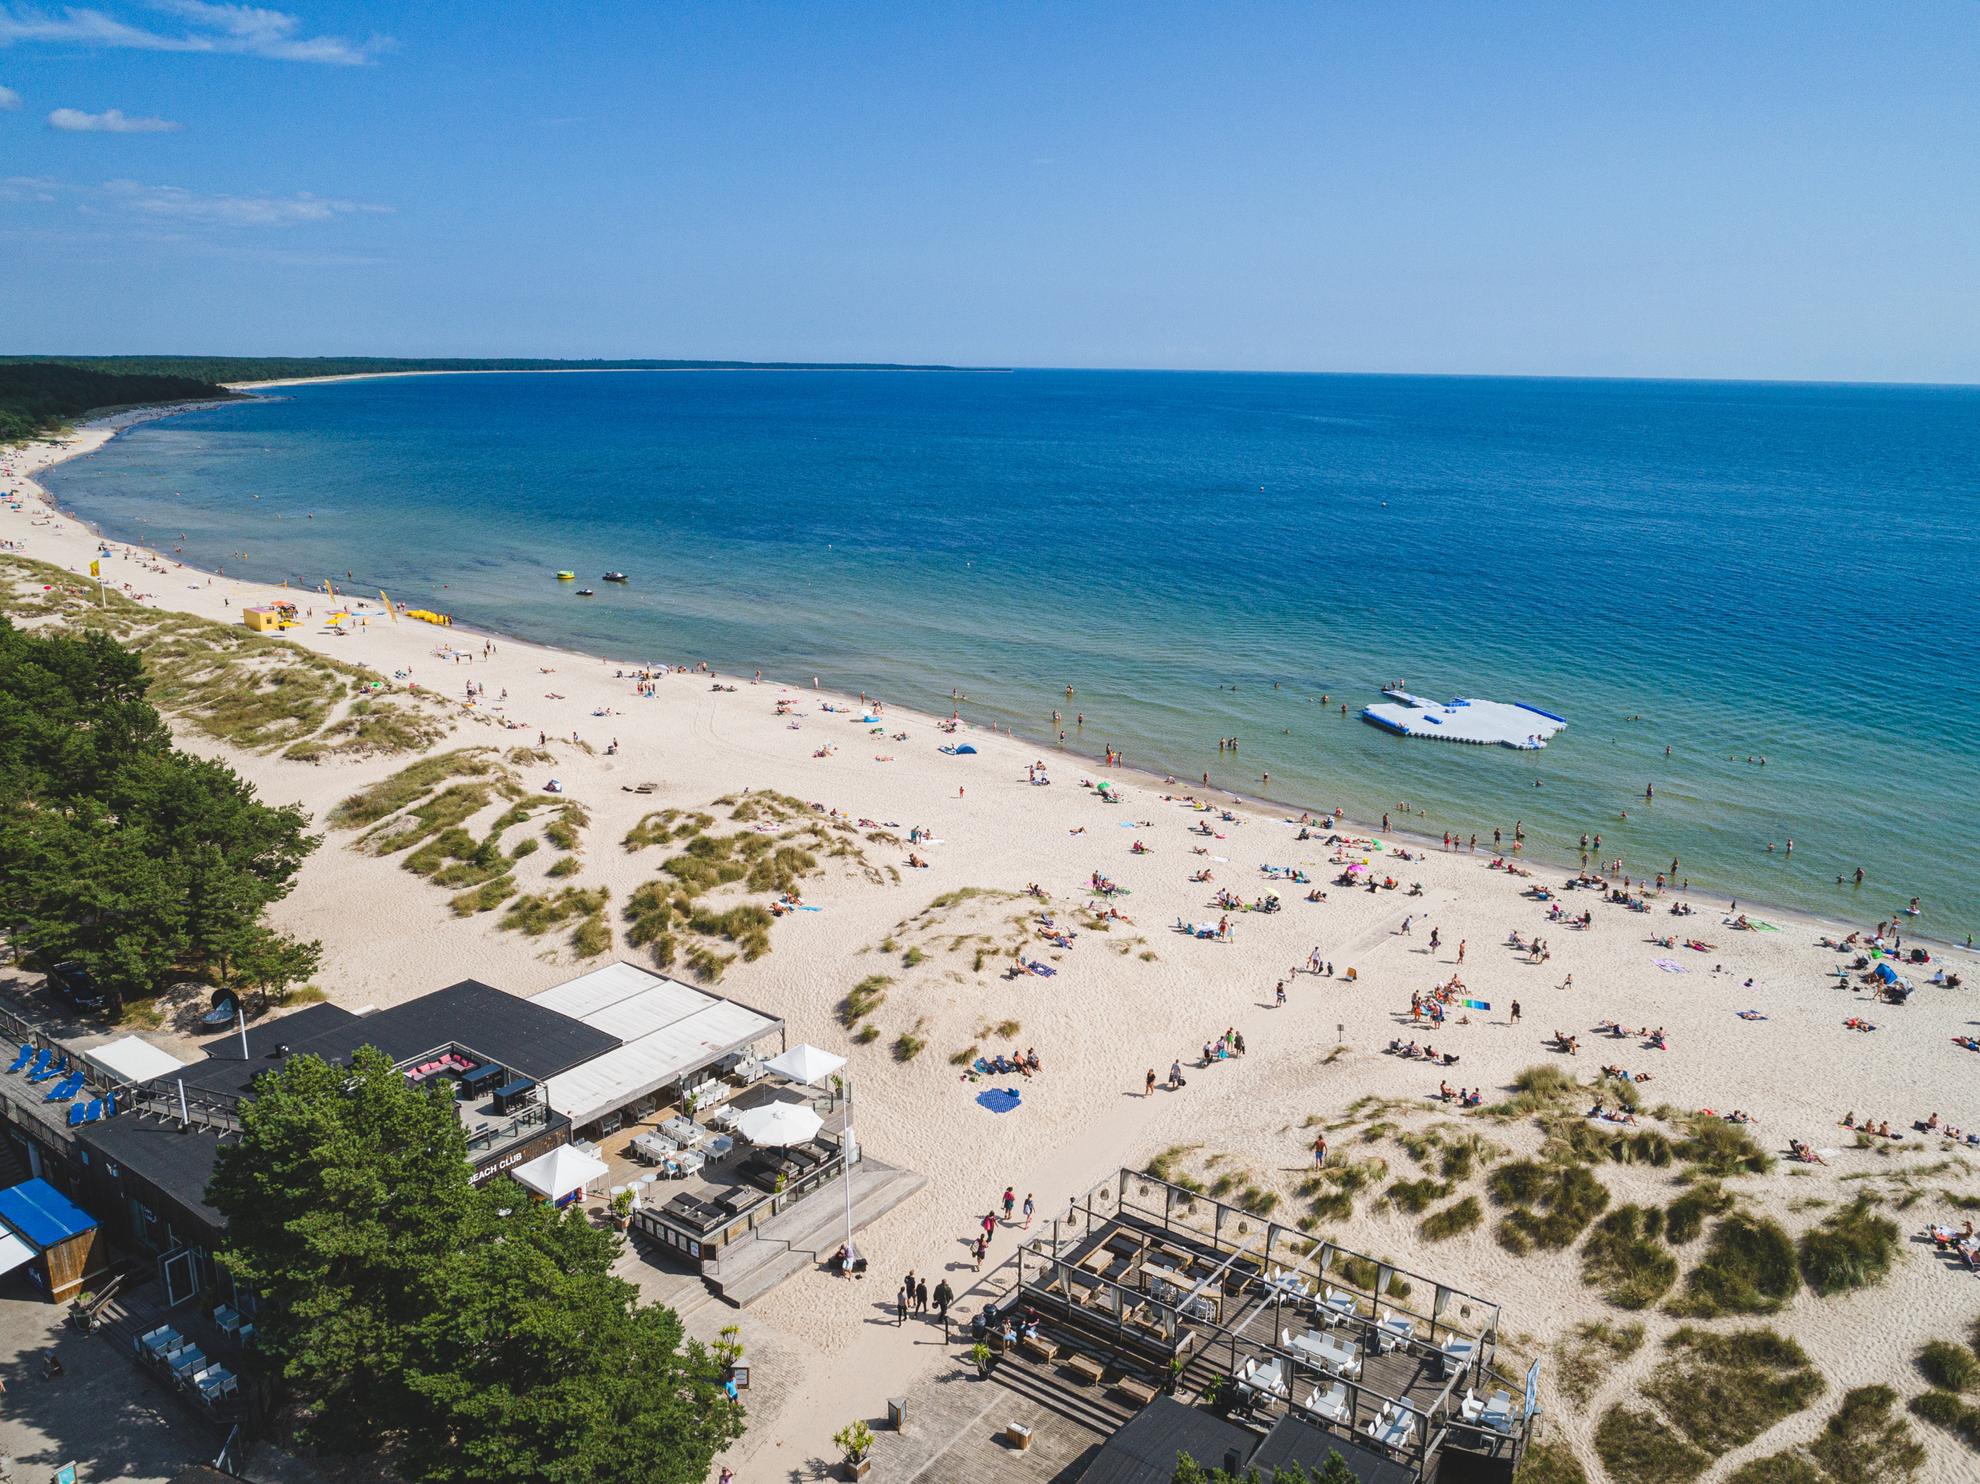 Das Türkisfarbene Meer am Böda Sand liegt am weißen Sandstrand. Menschen befinden sich am Strand und Baden oder Sonnen sich.